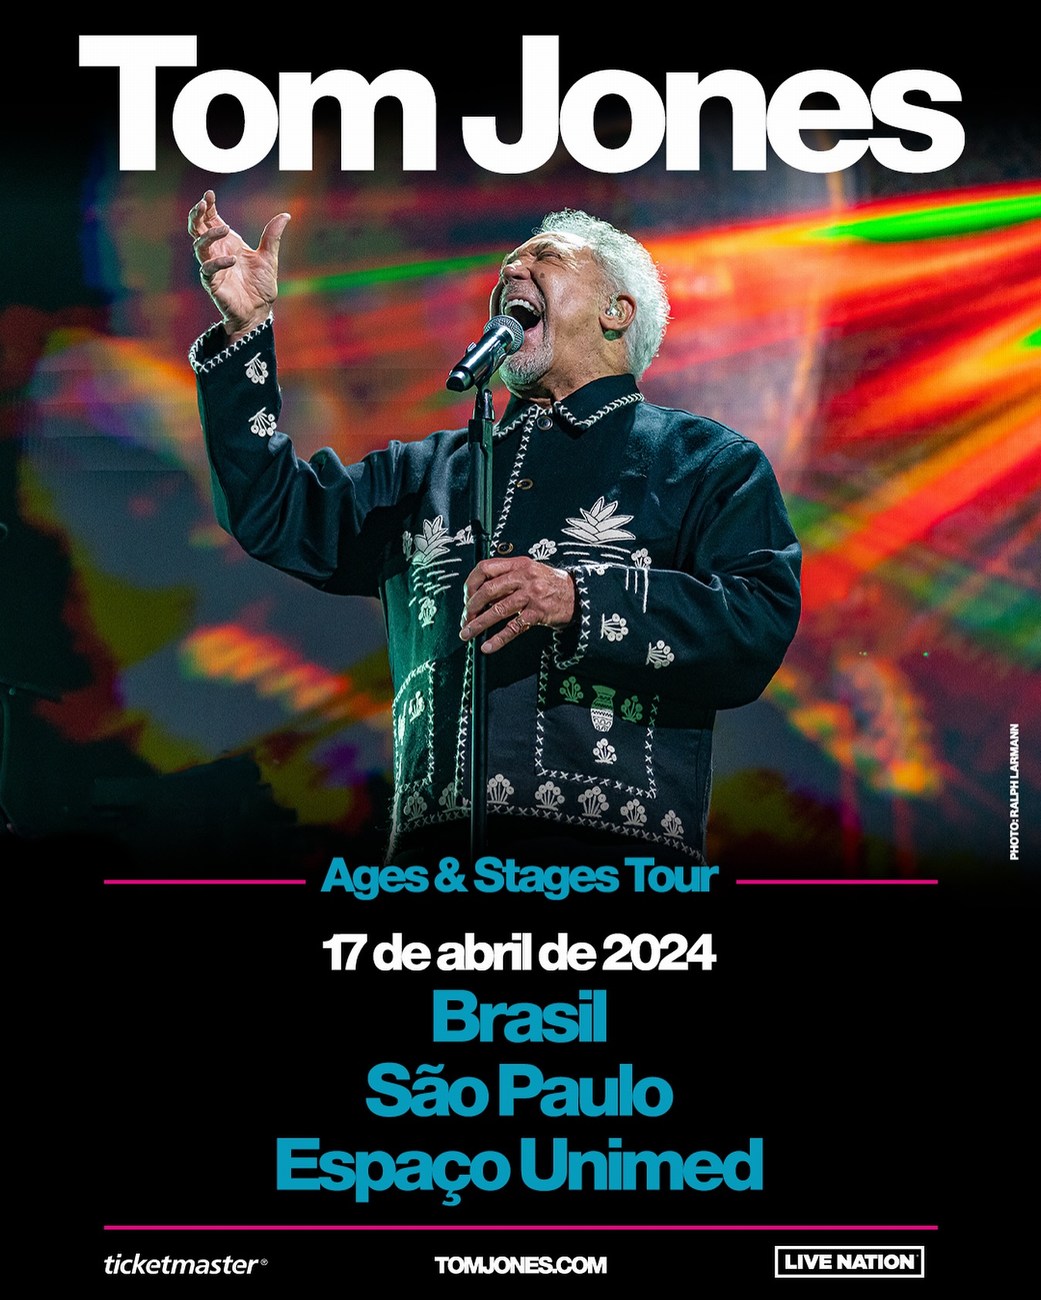 Tom Jones anuncia show no Brasil em 2024 | Boomerang Music